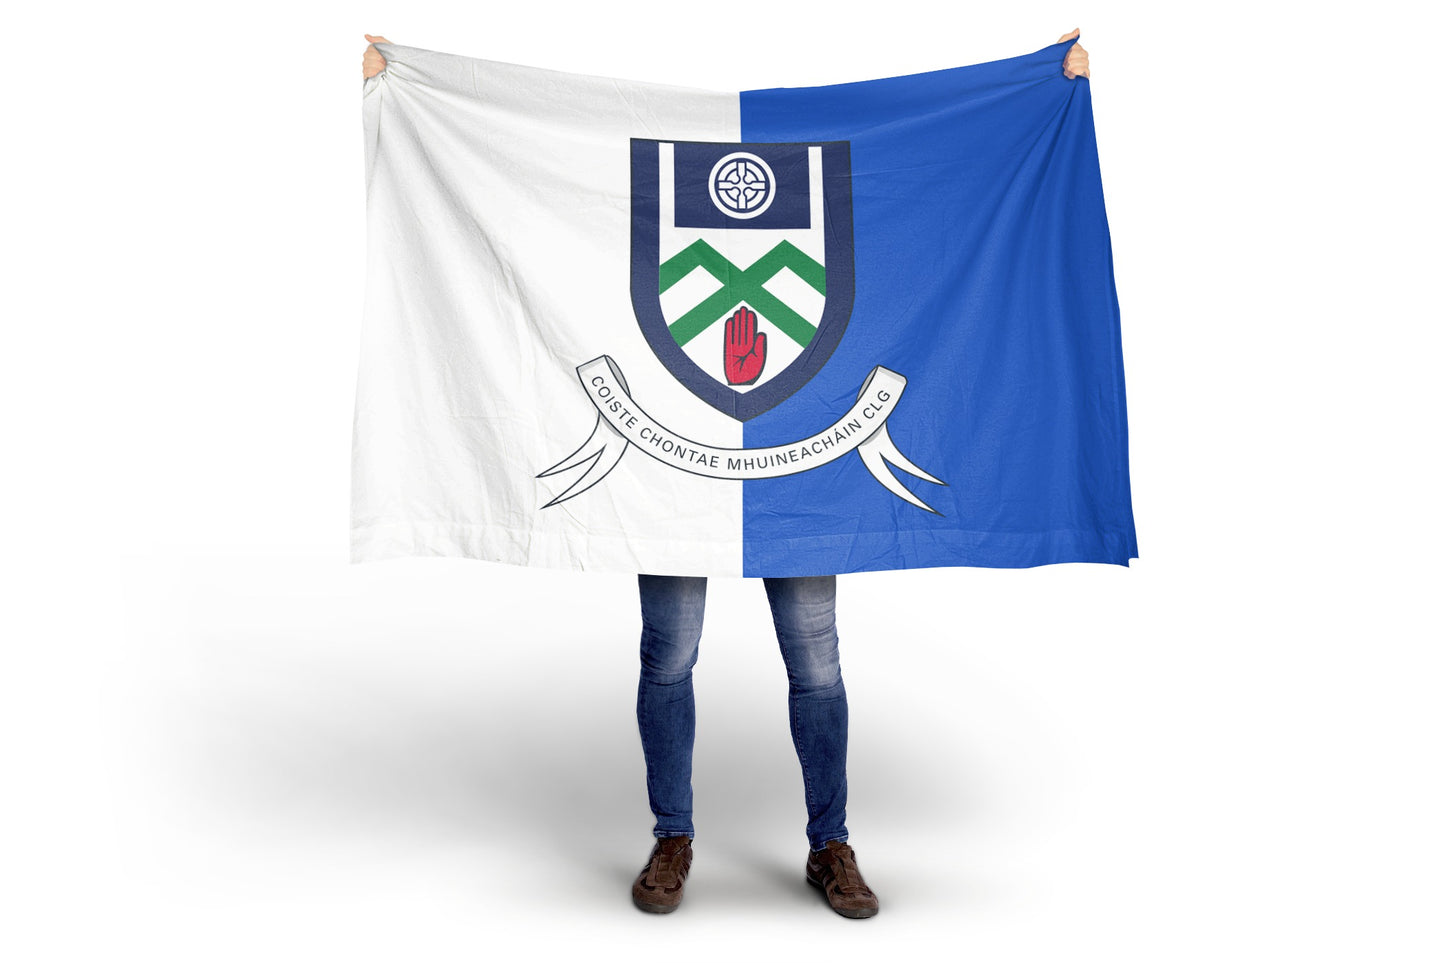 Bandeira da crista Monaghan GAA